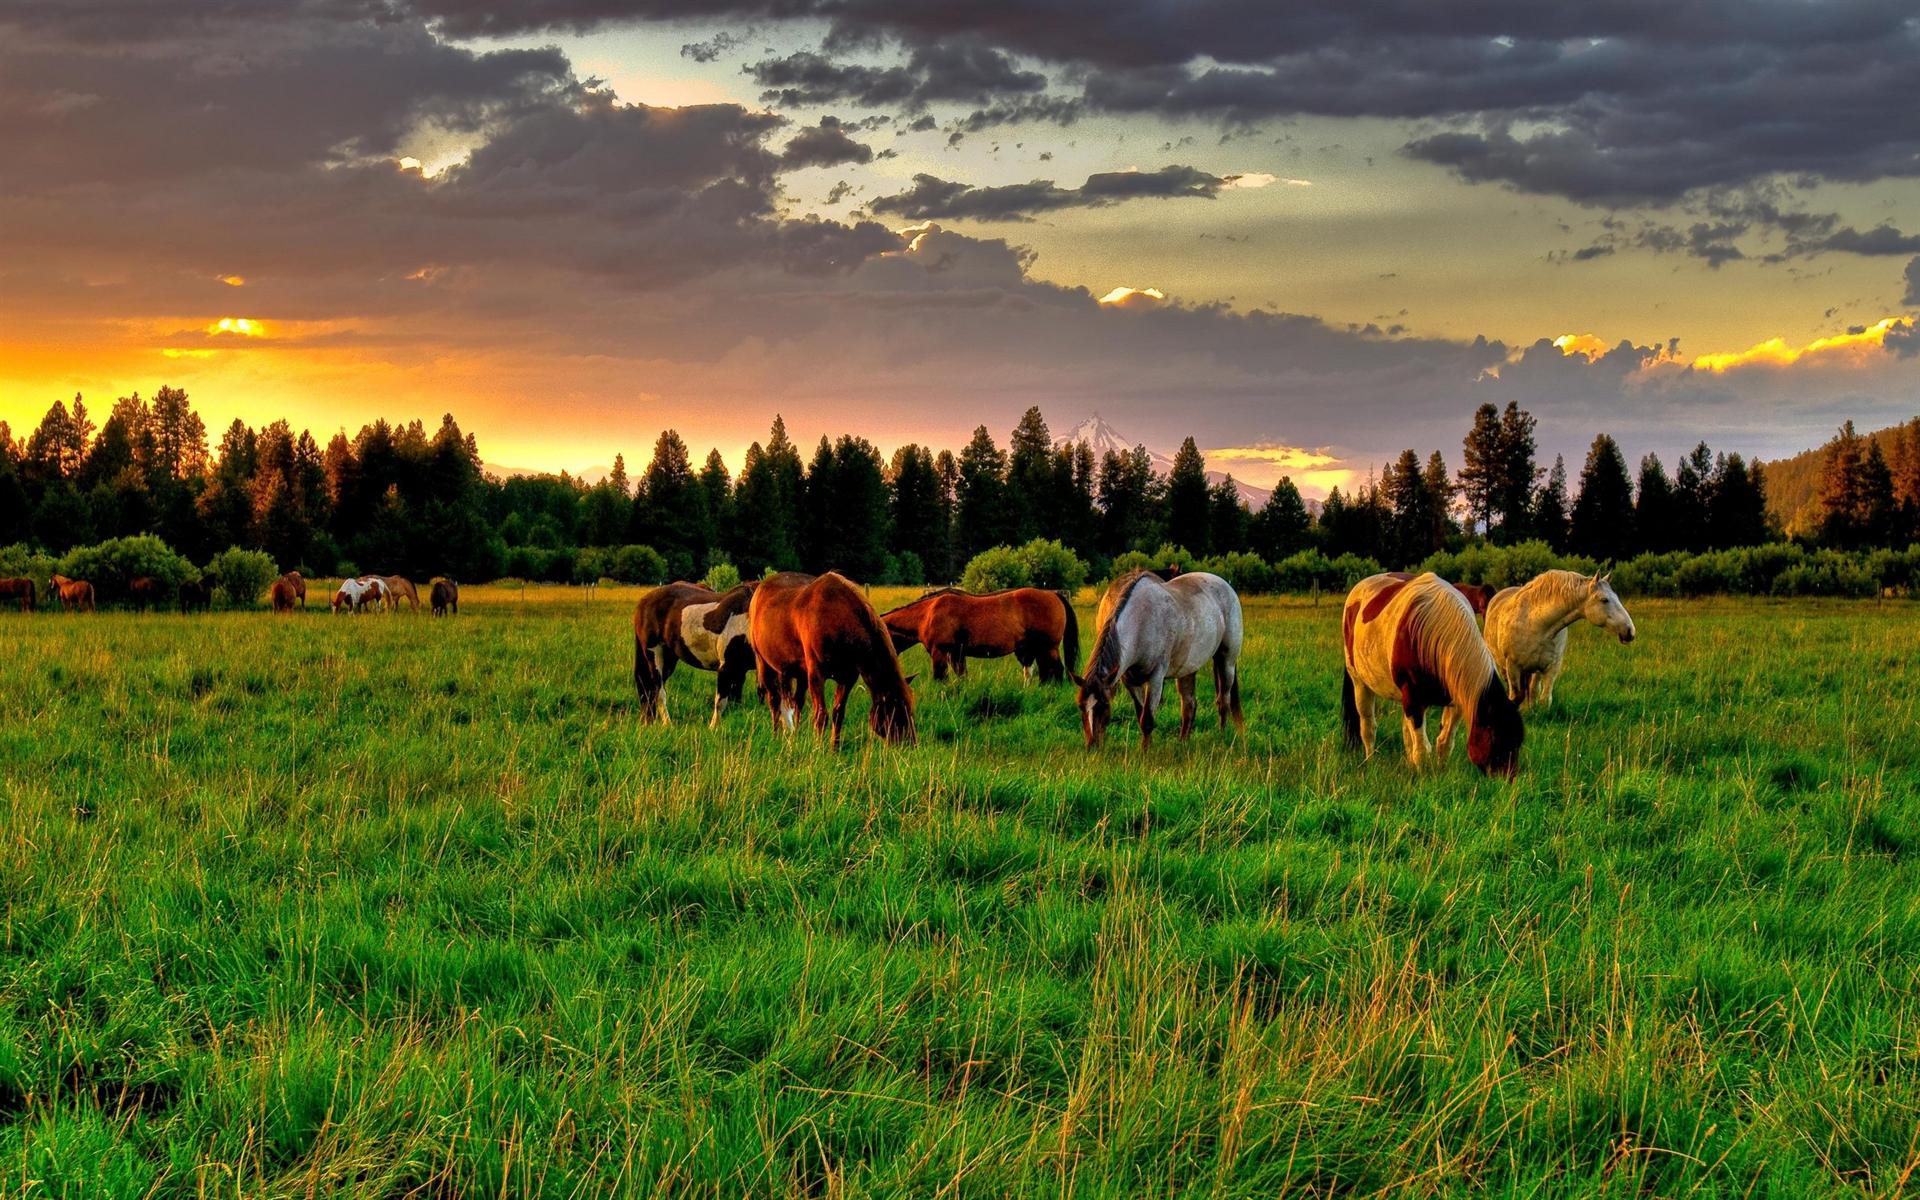 horse-farm-hd-wallpaper-download-horse-farm-images-free